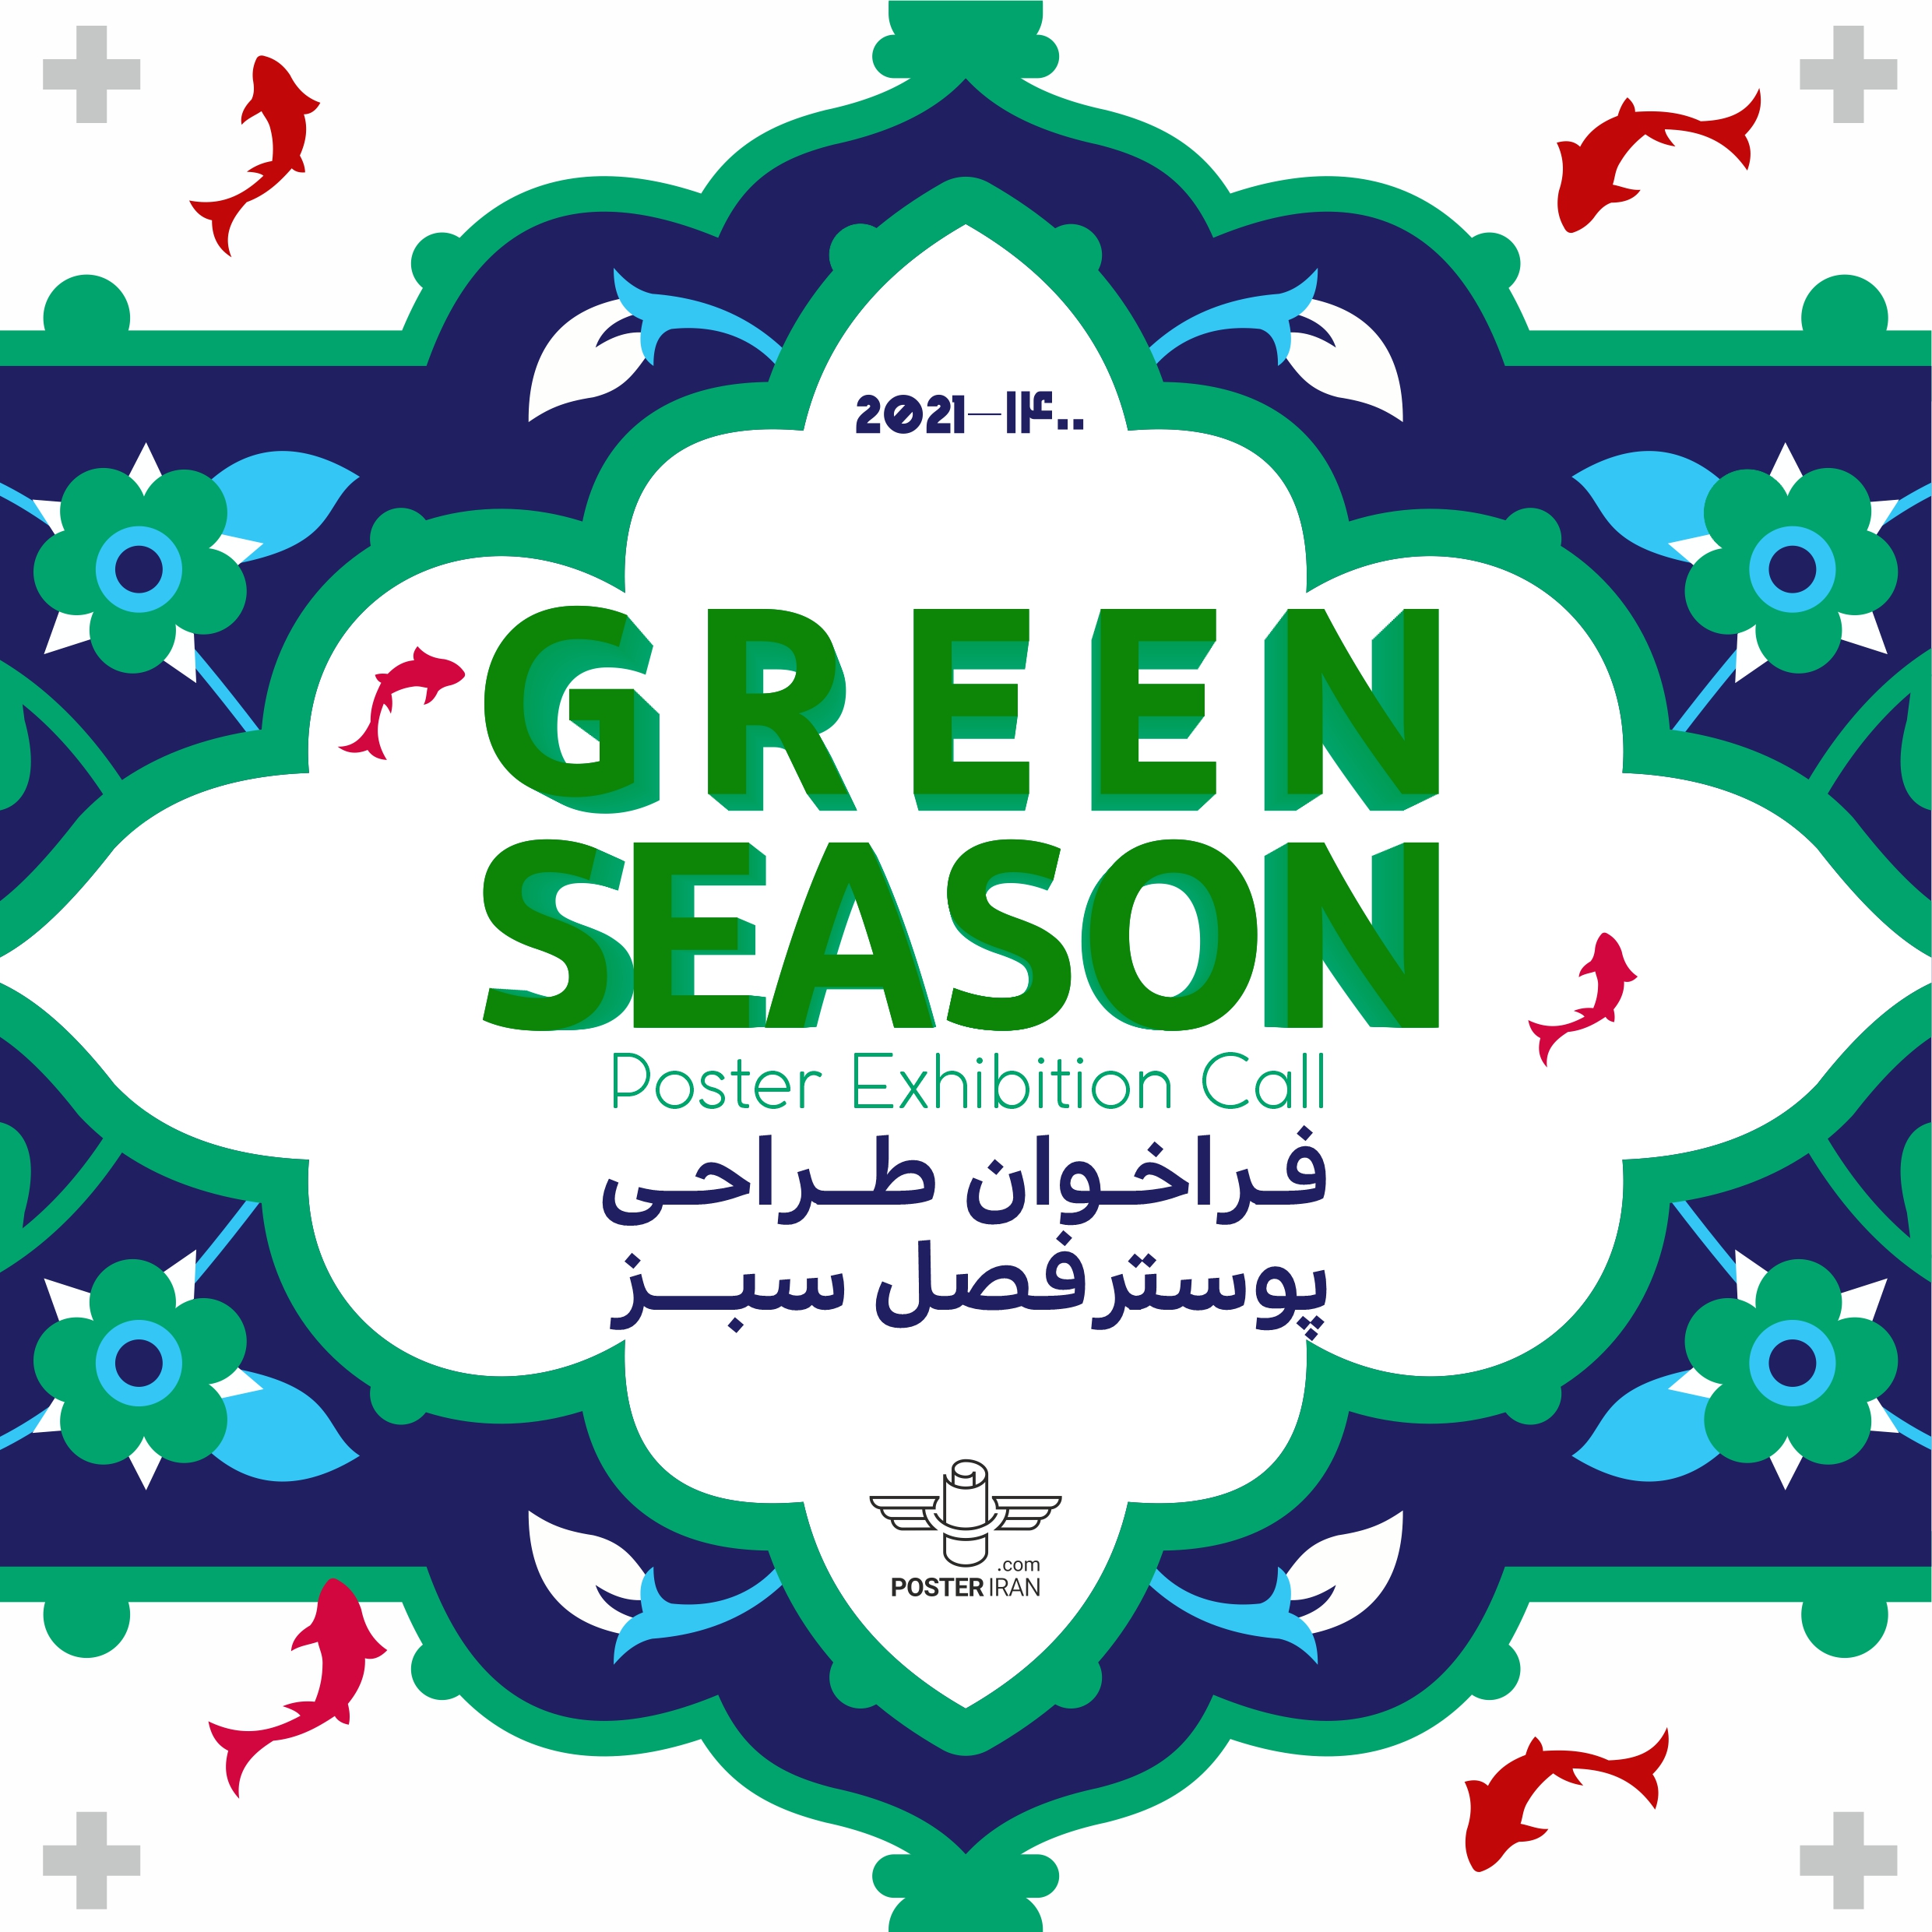 فراخوان نمایشگاه پوستر بین المللی green season پوستر ایران